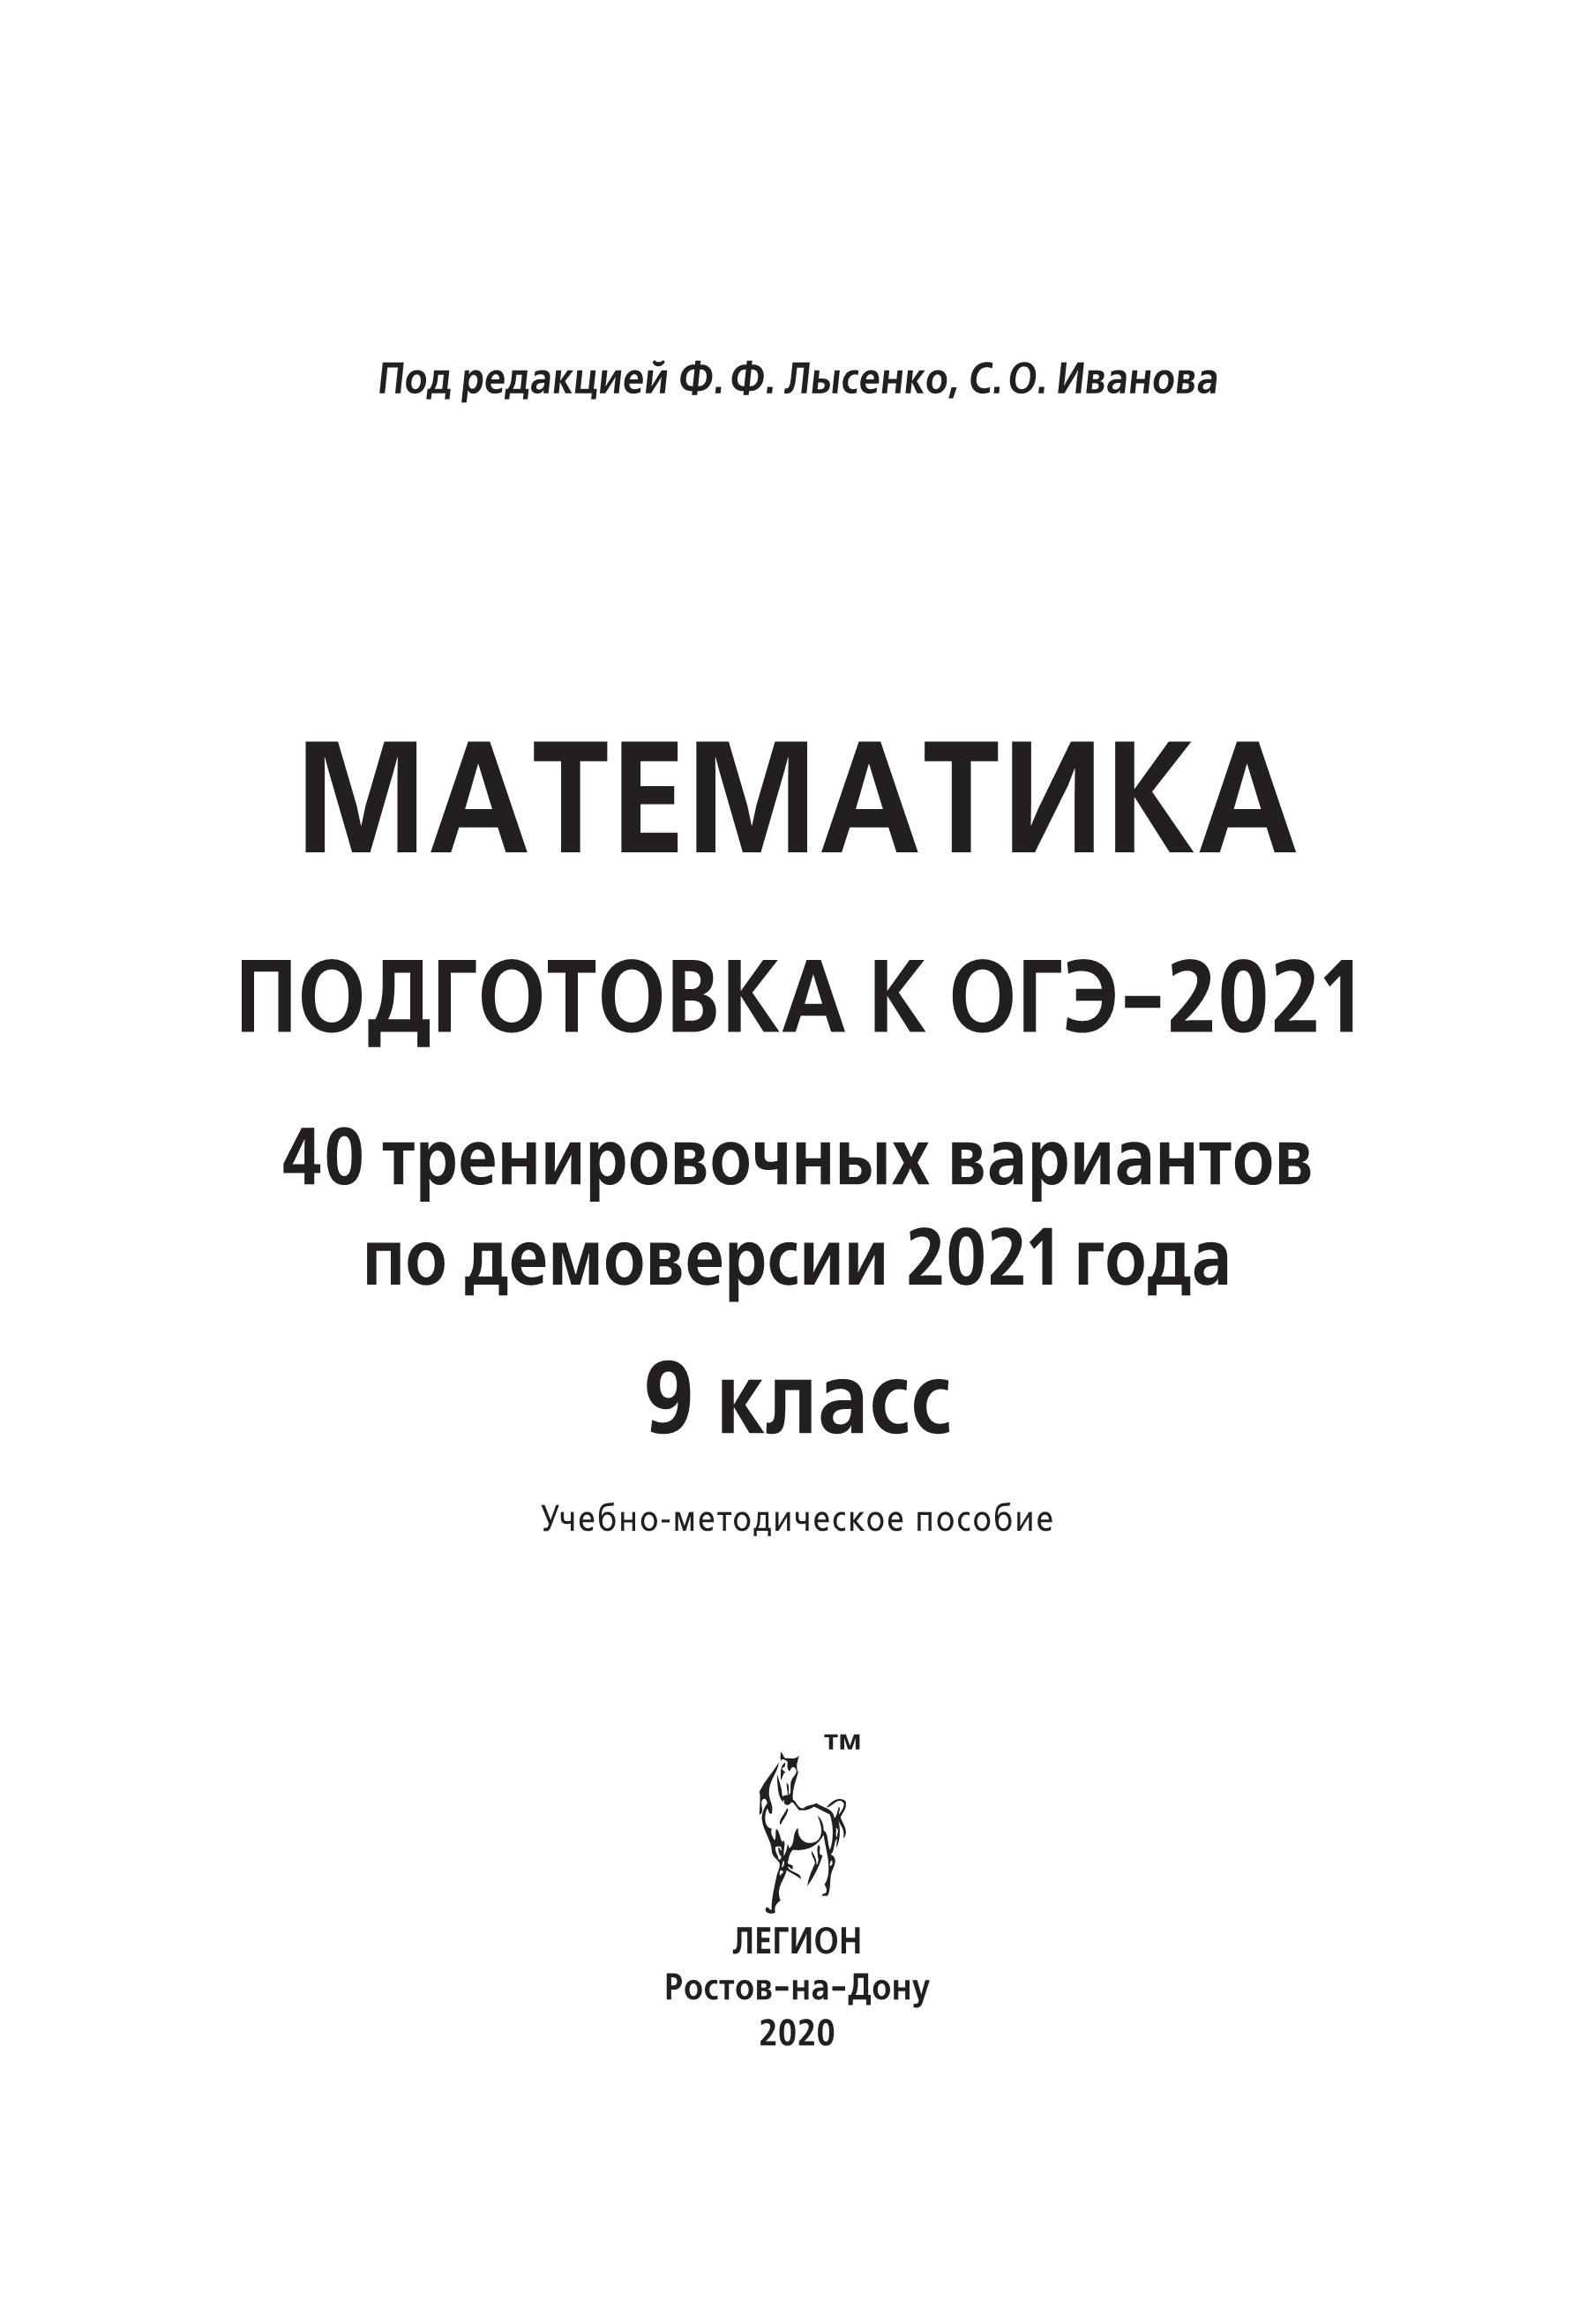 Математика. Подготовка к ОГЭ-2021. 9 класс. 40 тренировочных вариантов по демоверсии 2021 года